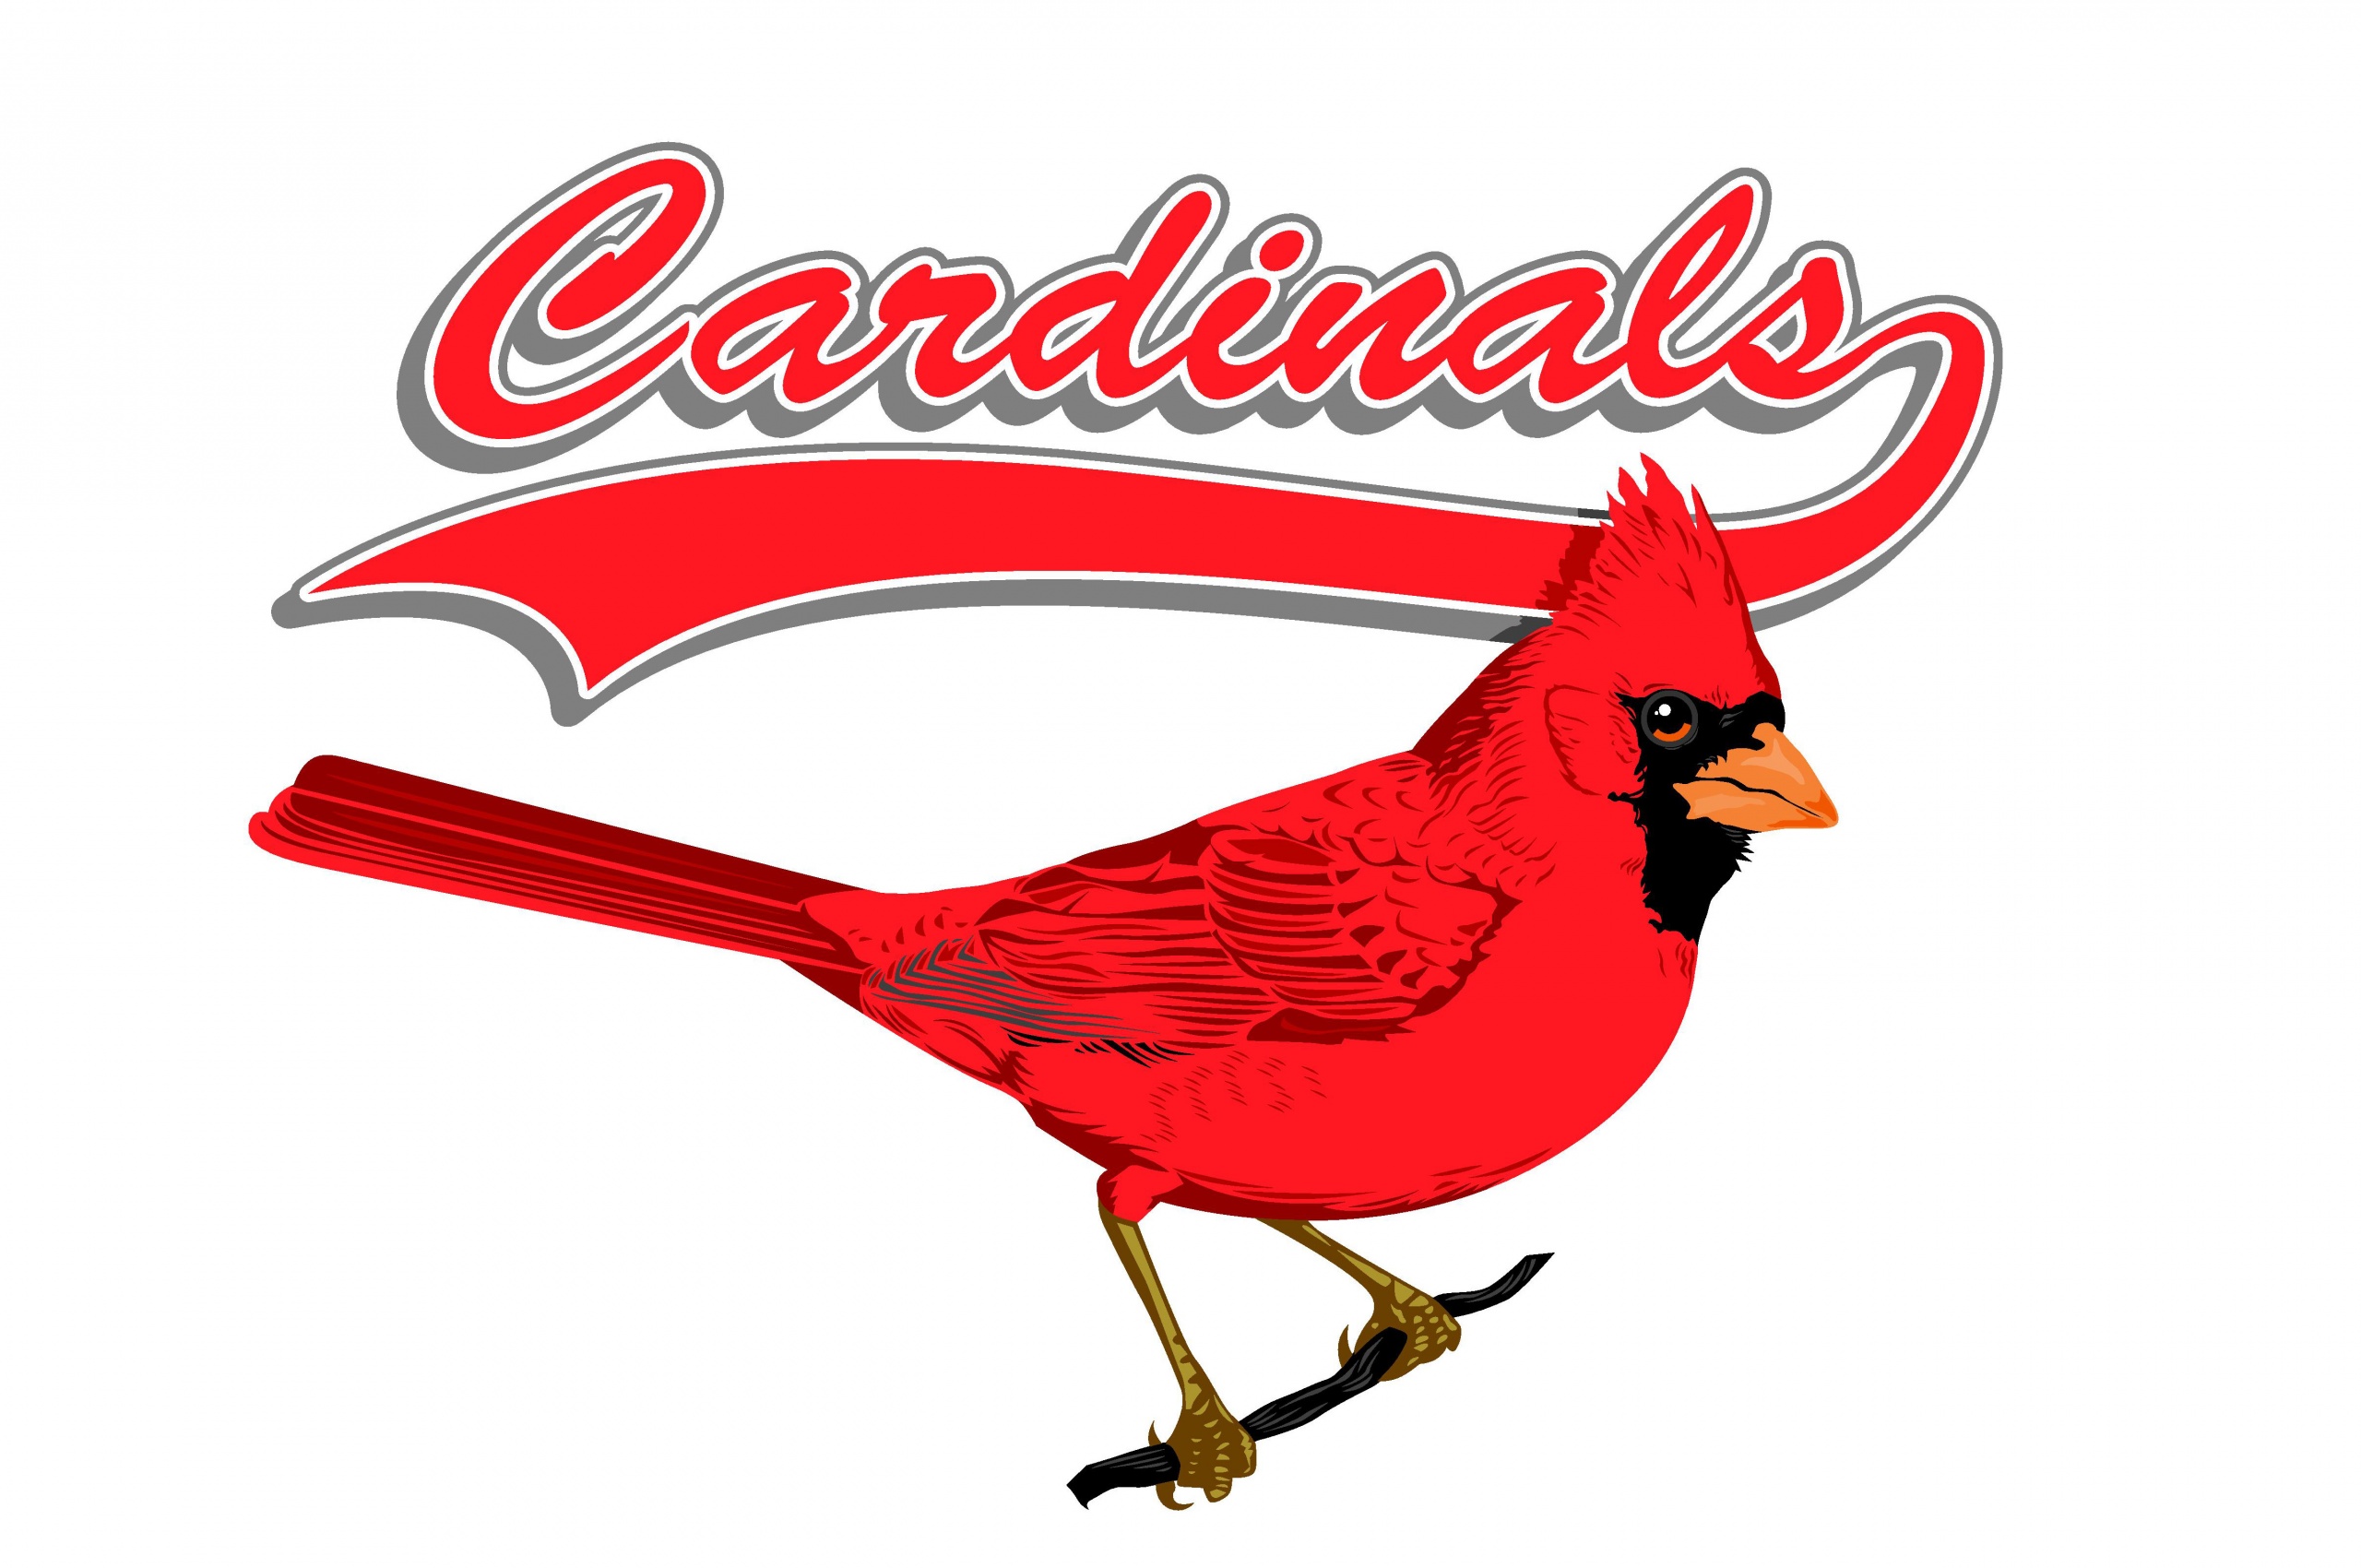 St. Louis Cardinals - Team Logo